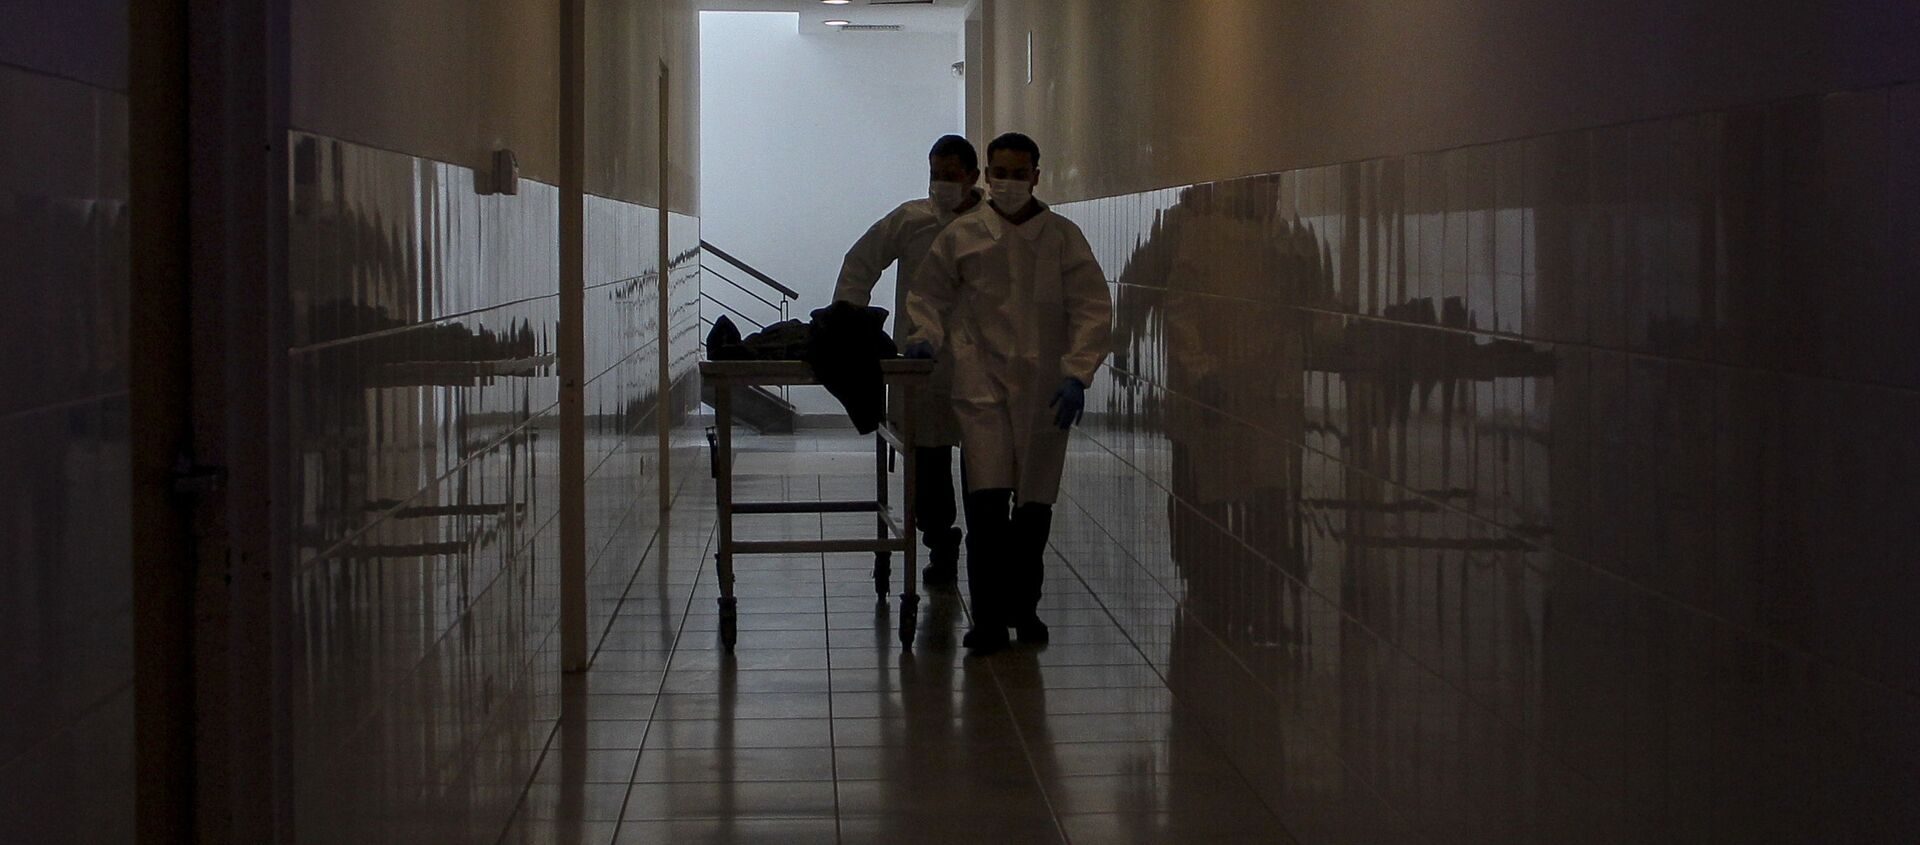 Сотрудники больницы перевозят тело человека, фото из архива - Sputnik Азербайджан, 1920, 02.04.2021